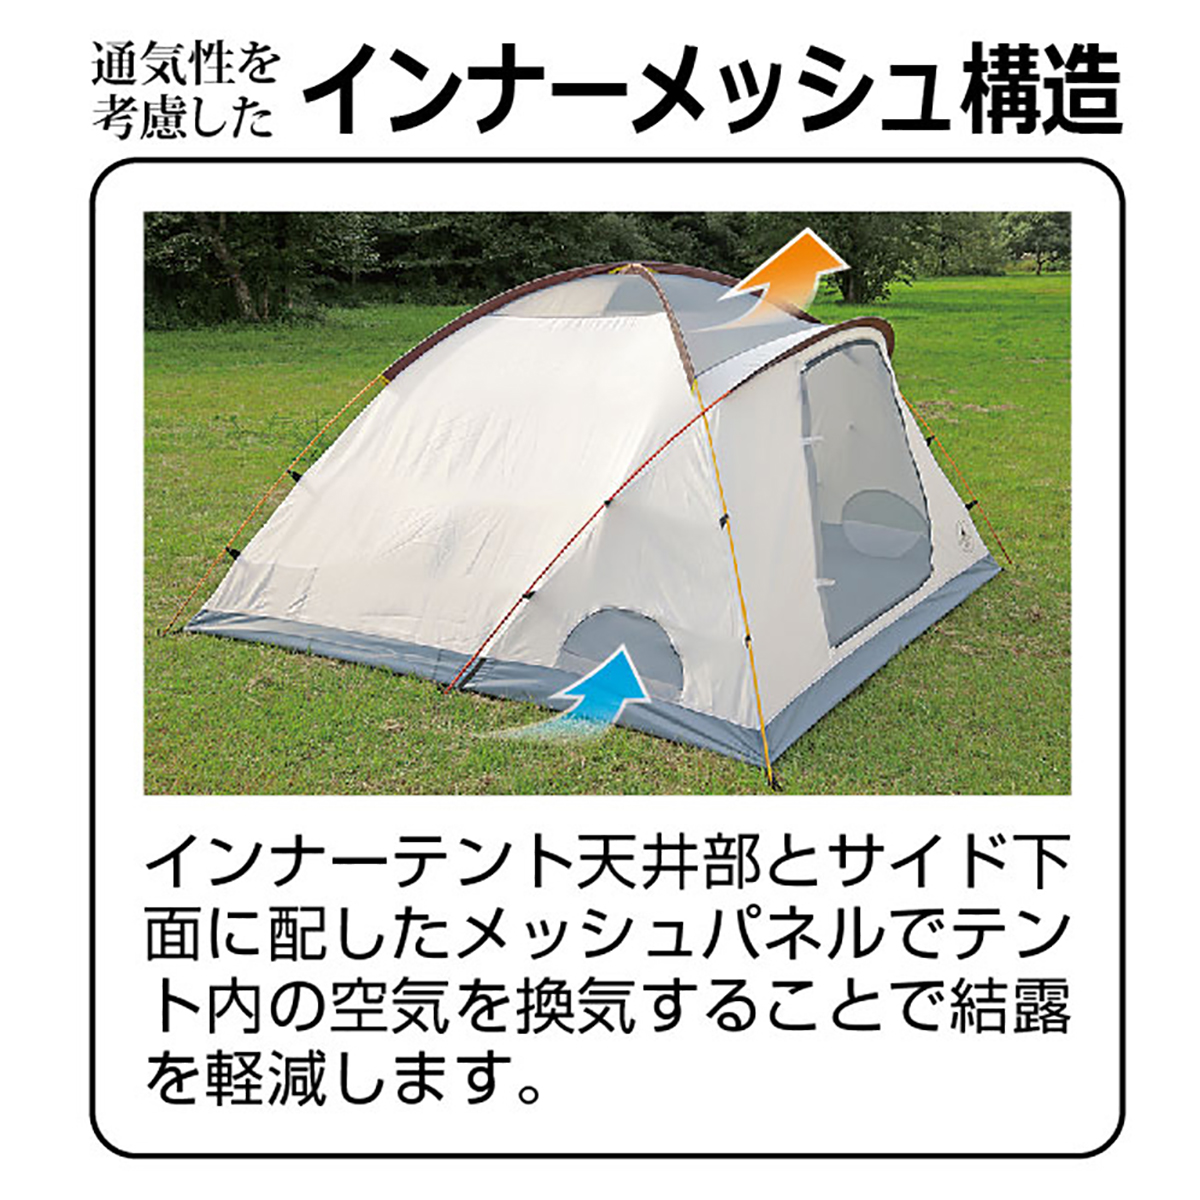 エクスギア ツールームドーム270 4~5人用 - アウトドア・キャンプ用品